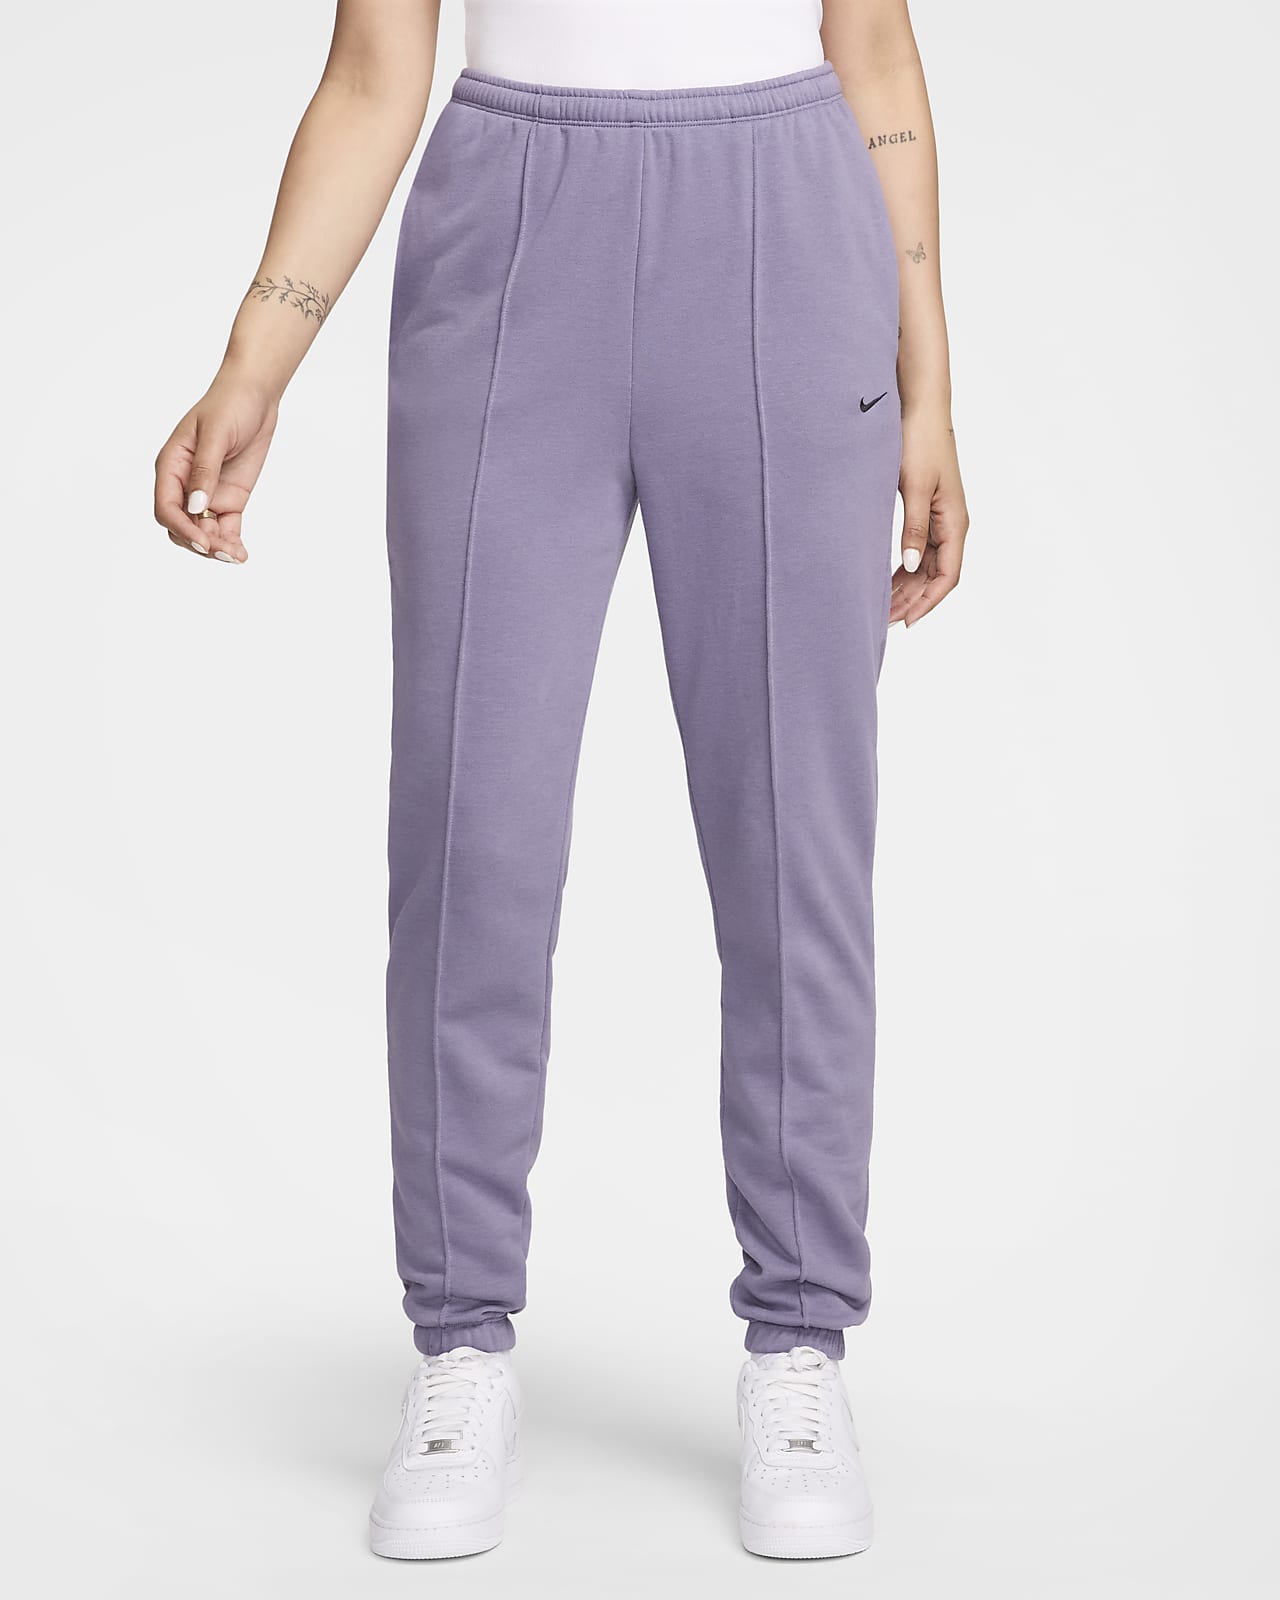 Nike Sportswear Chill Terry Pantalons de xandall de teixit French Terry de cintura alta entallats - Dona